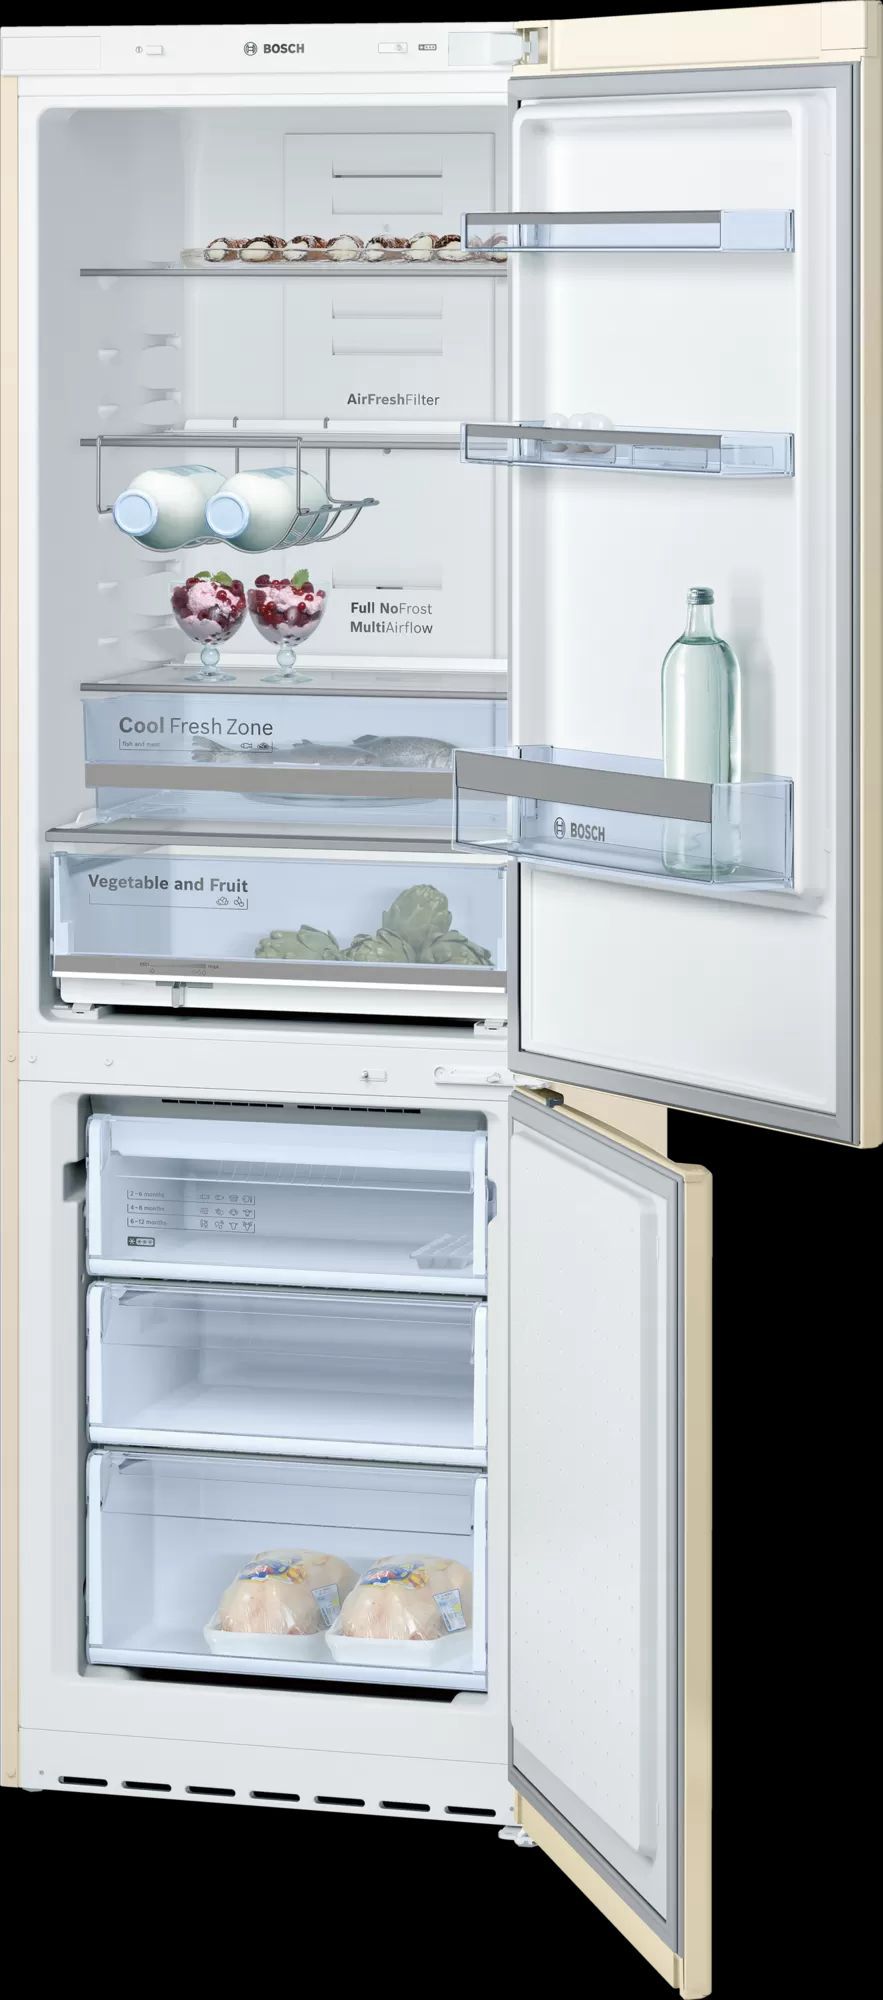 холодильник bosch kgn36хк18, купить в Красноярске холодильник bosch kgn36хк18,  купить в Красноярске дешево холодильник bosch kgn36хк18, купить в Красноярске минимальной цене холодильник bosch kgn36хк18